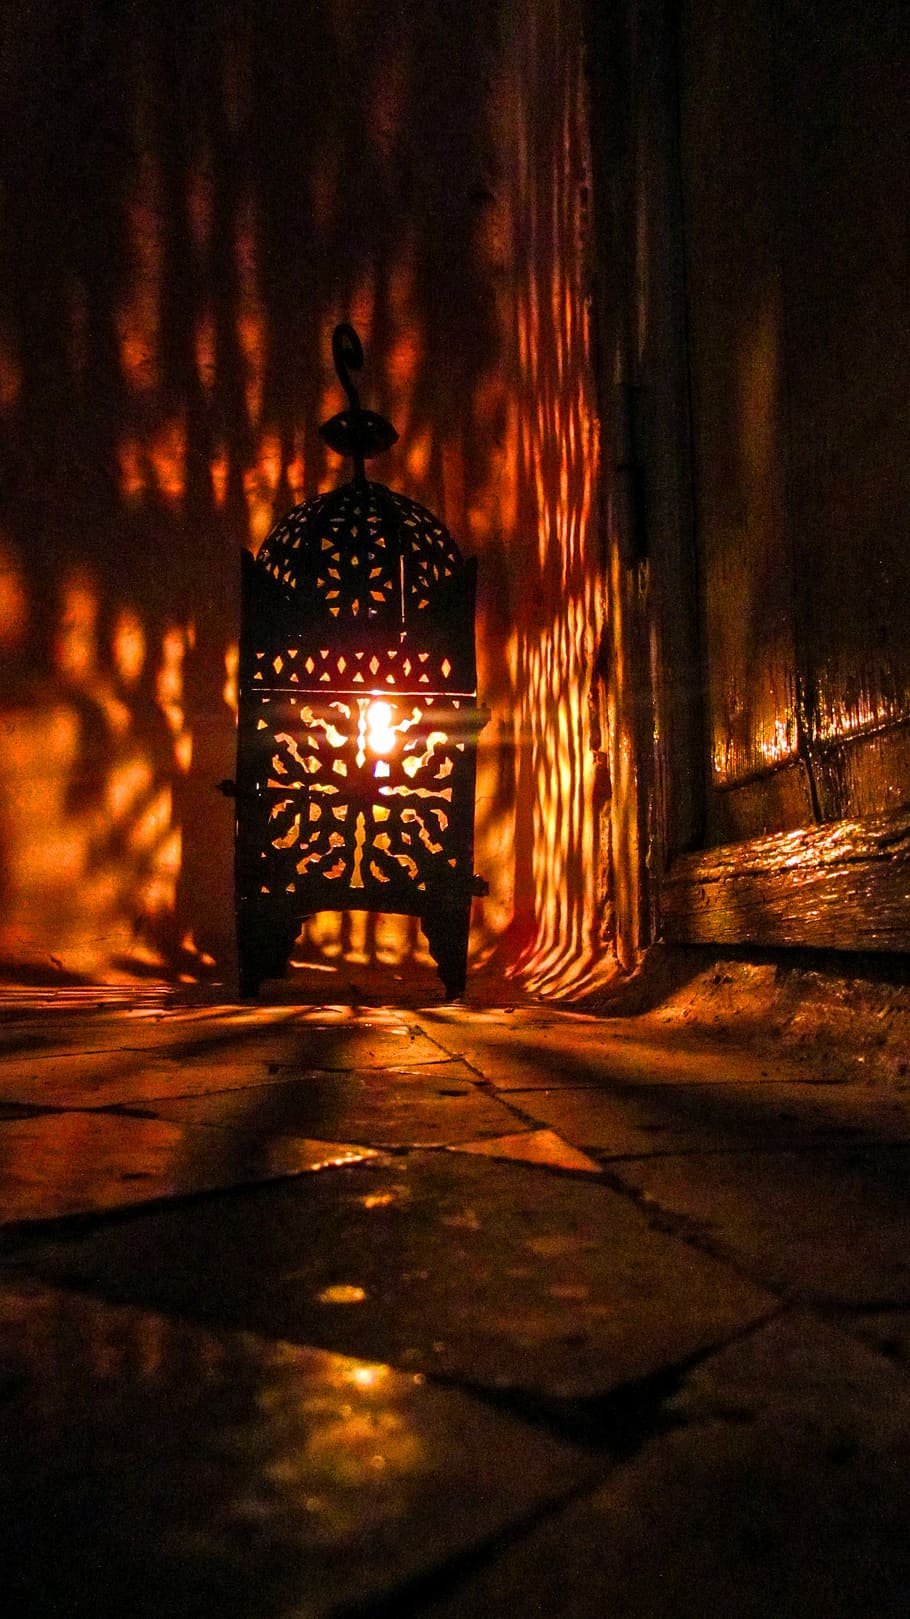 lampu lantai coklat, arab, oriental, lampu, mosaik, maroko, moorish, cahaya, shadow play, lentera